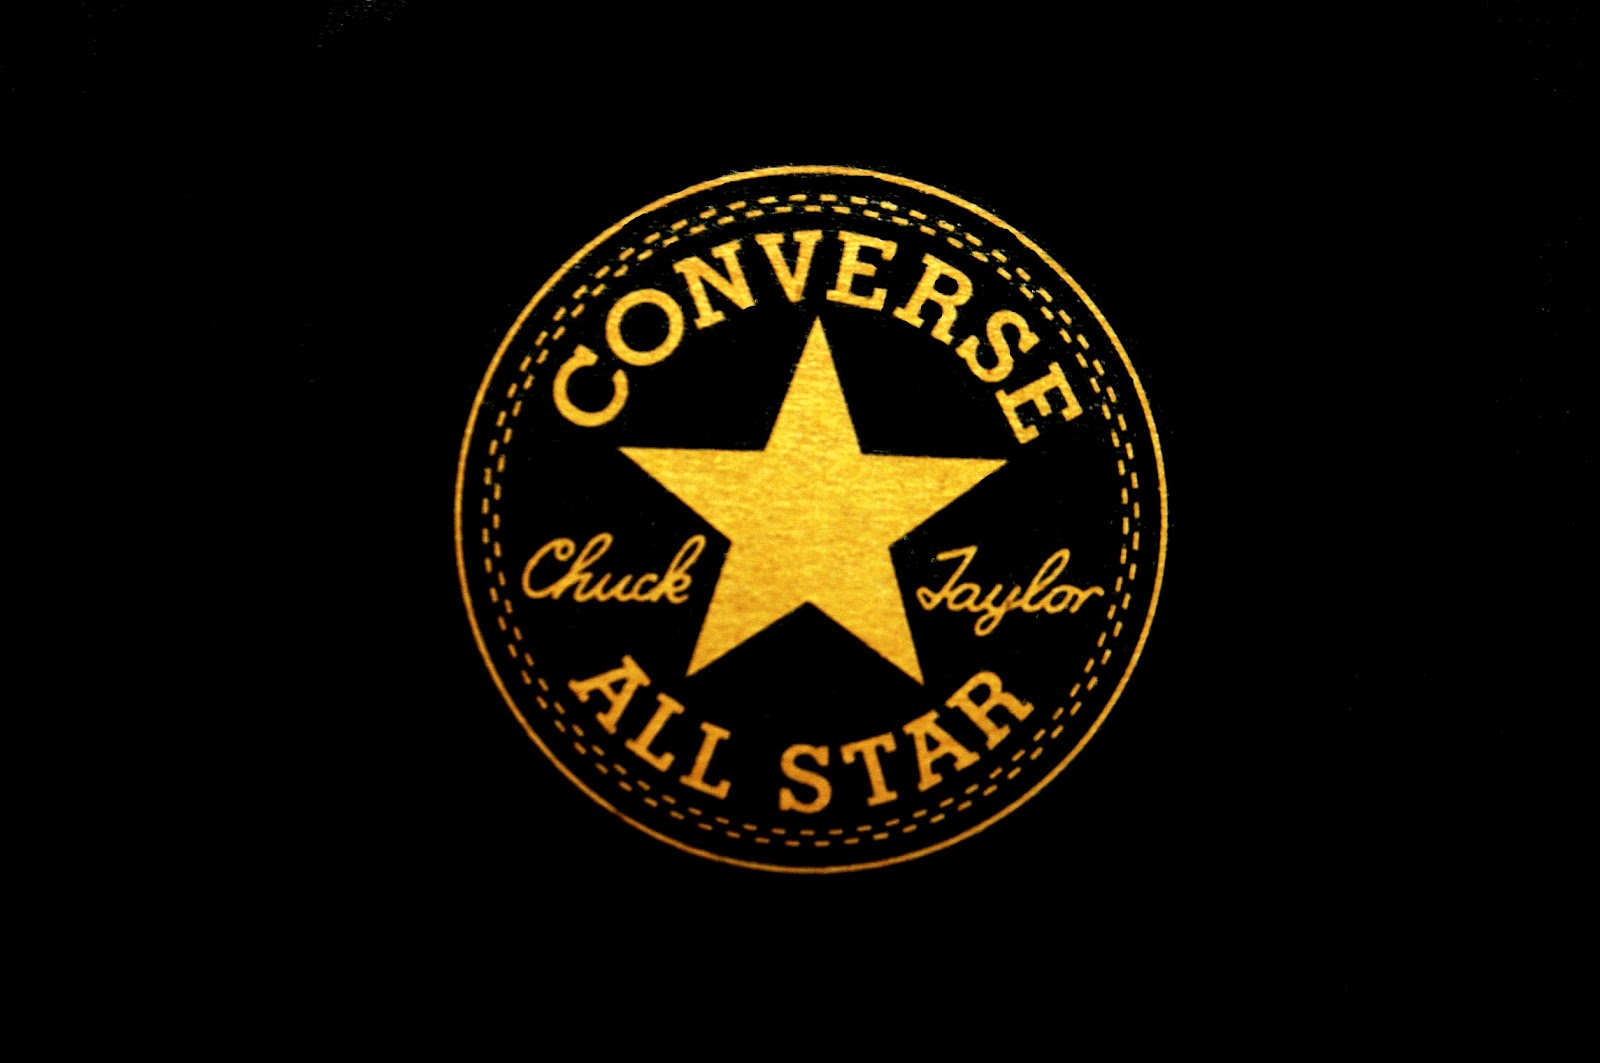 converse all star logo original